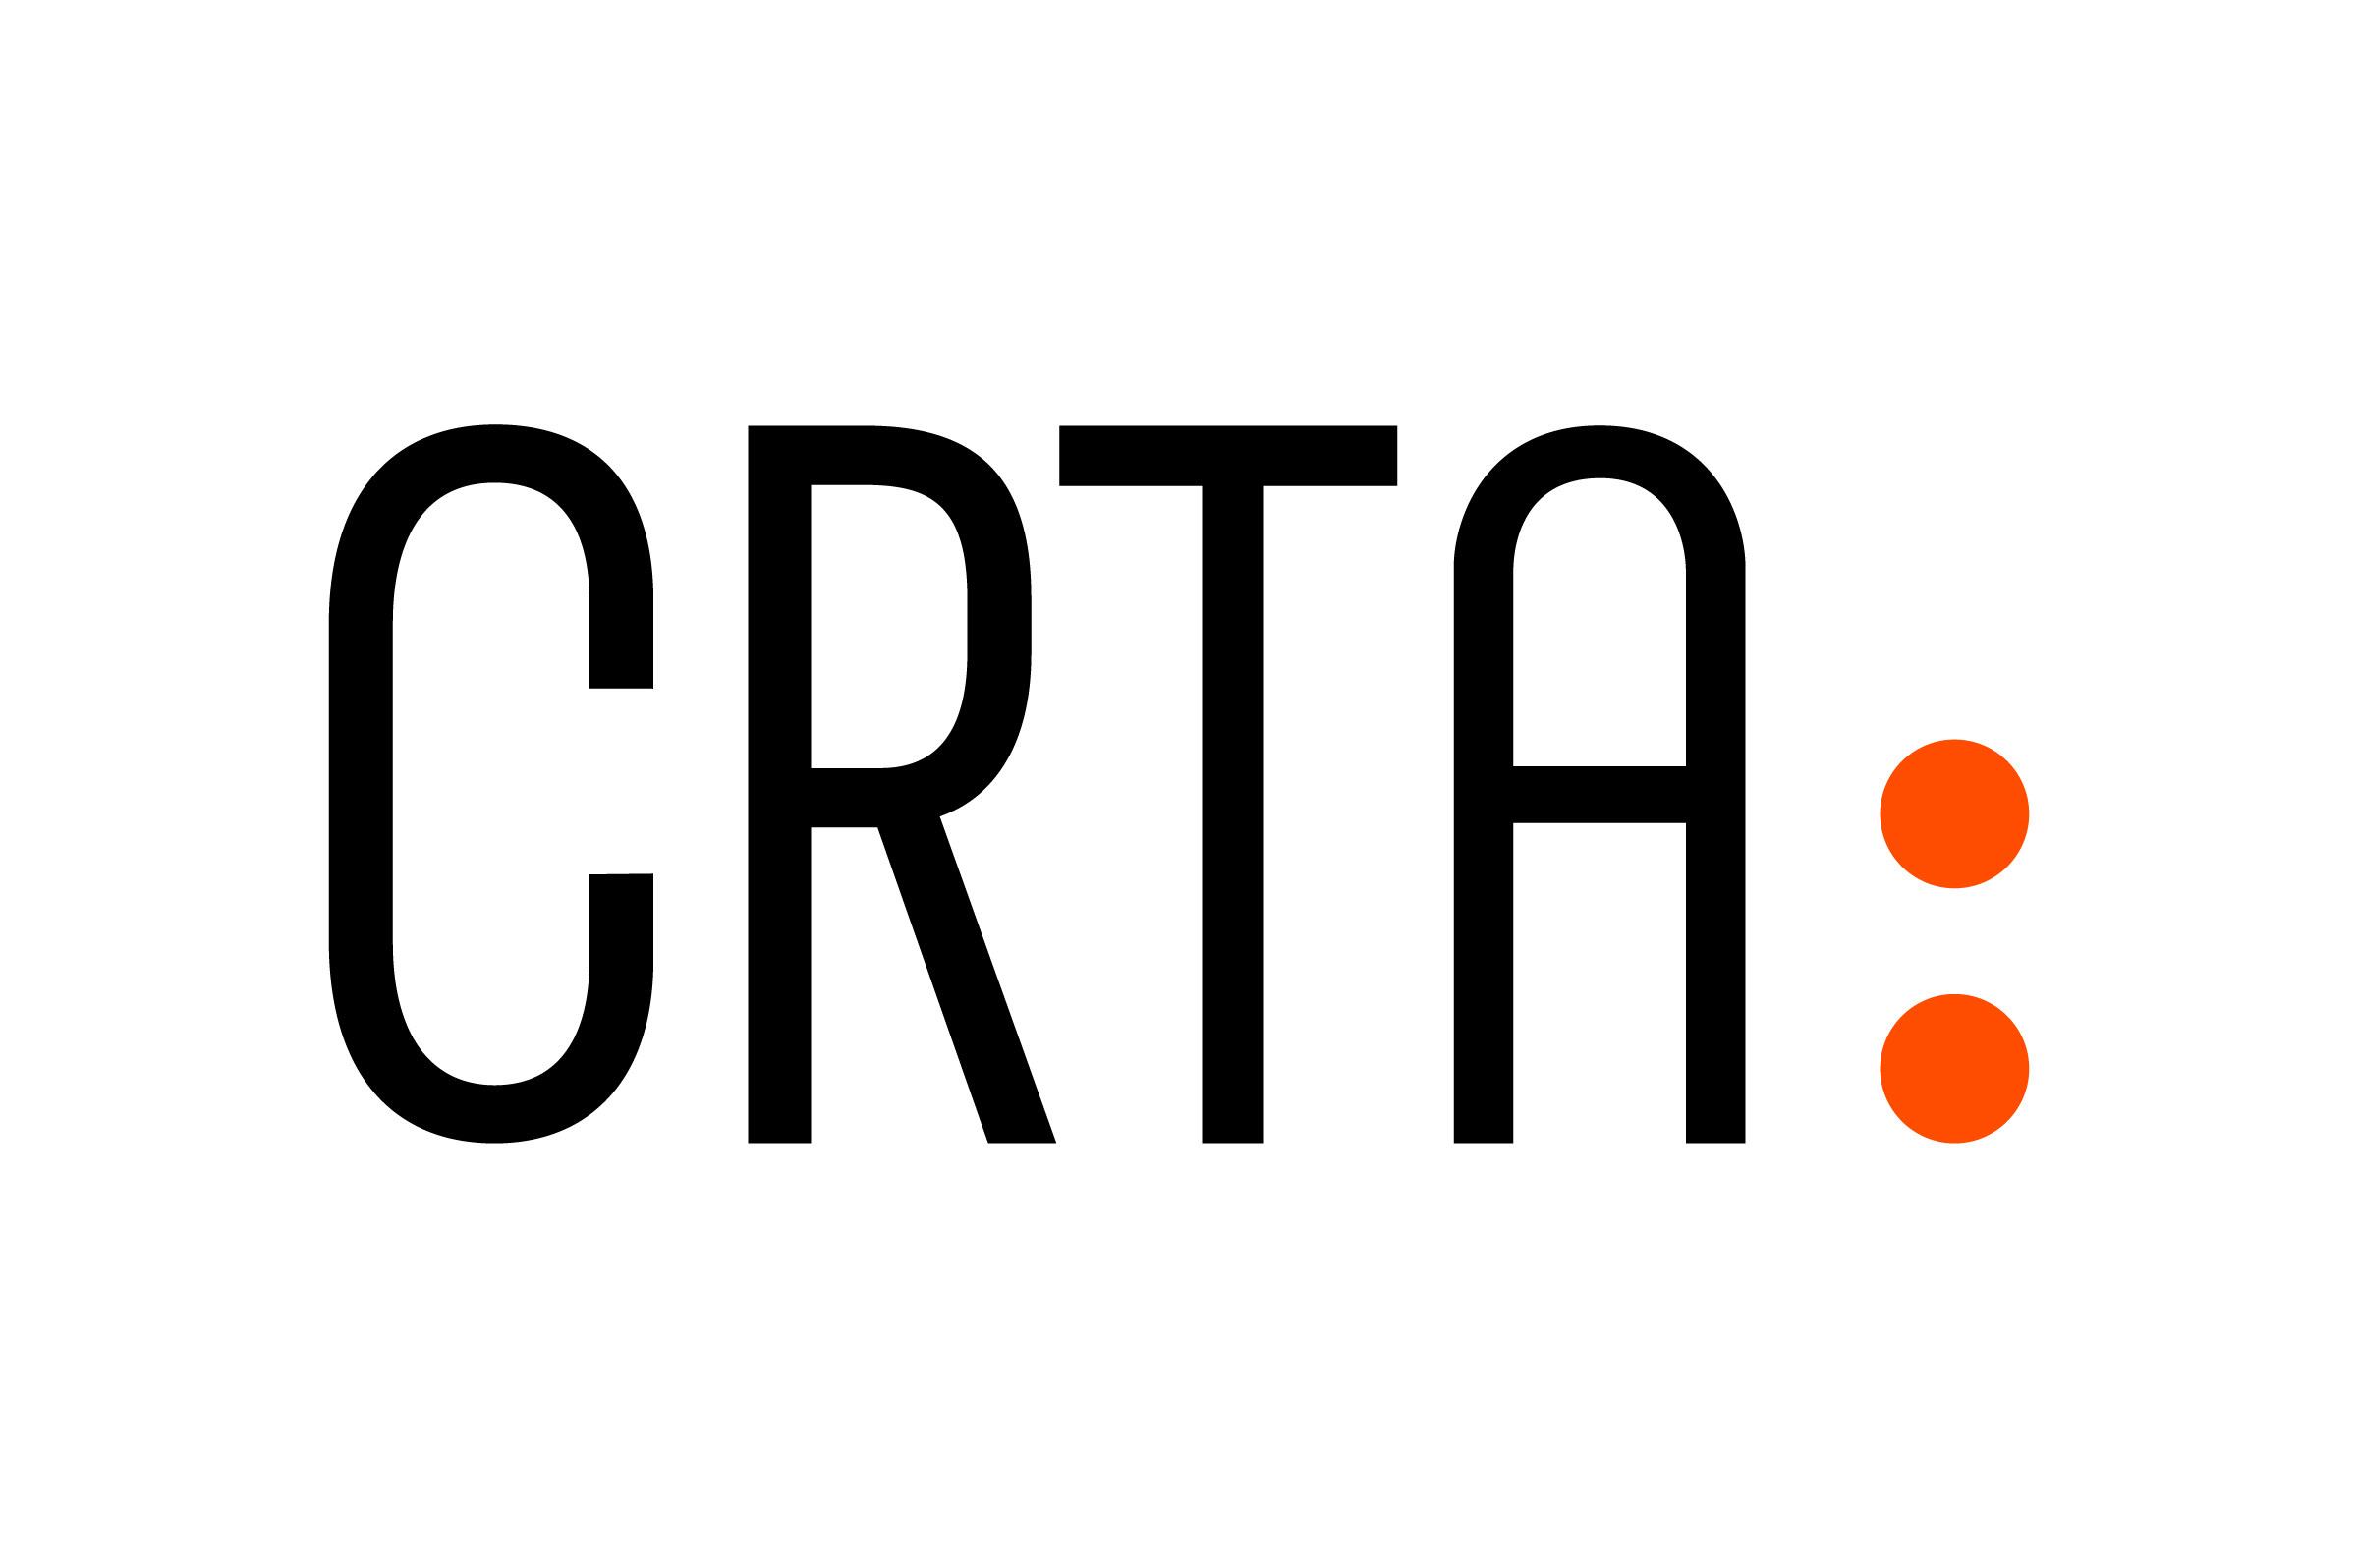 CRTA 2020 logo